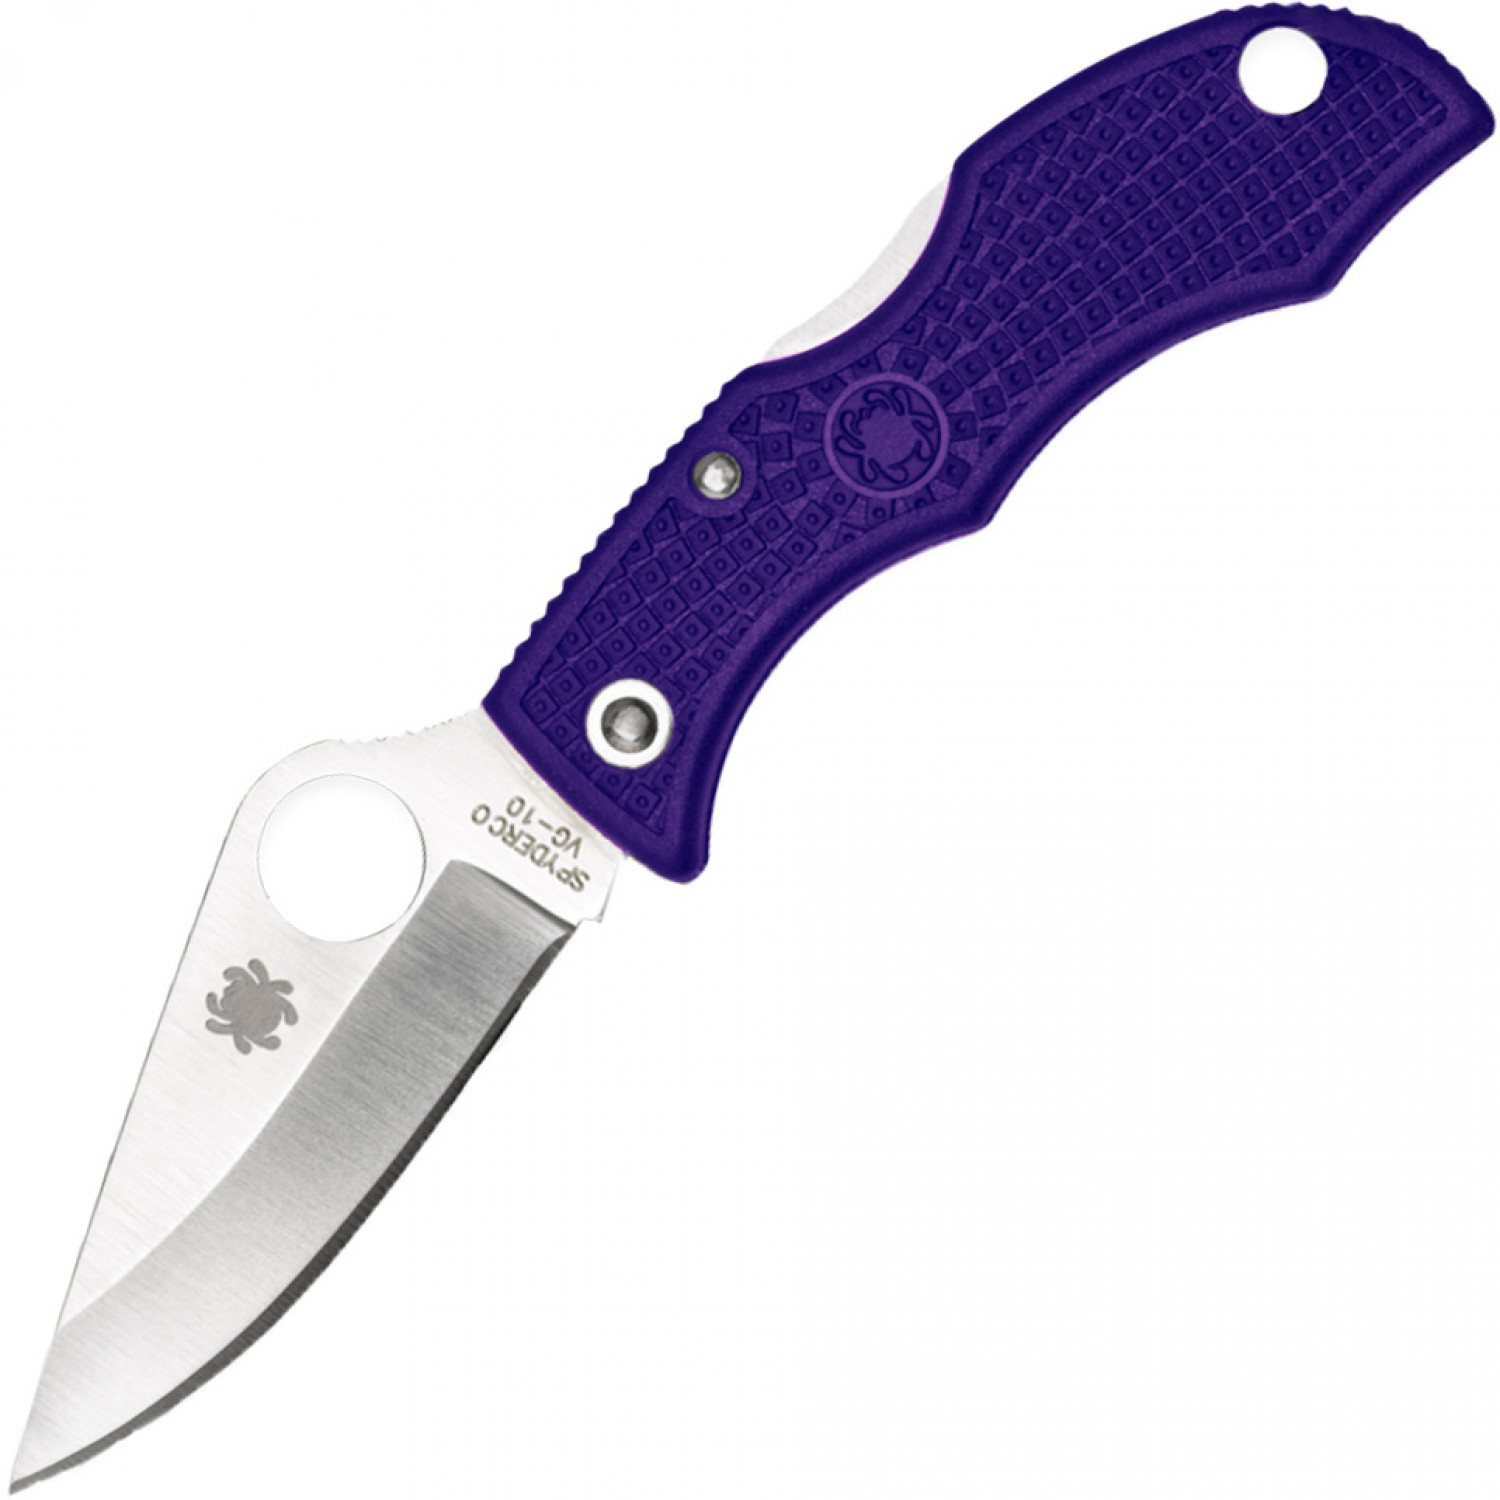 Нож складной Ladybug 3 - Spyderco LPRP3, сталь VG-10 Satin Plain, рукоять термопластик FRN, фиолетовый - фото 1